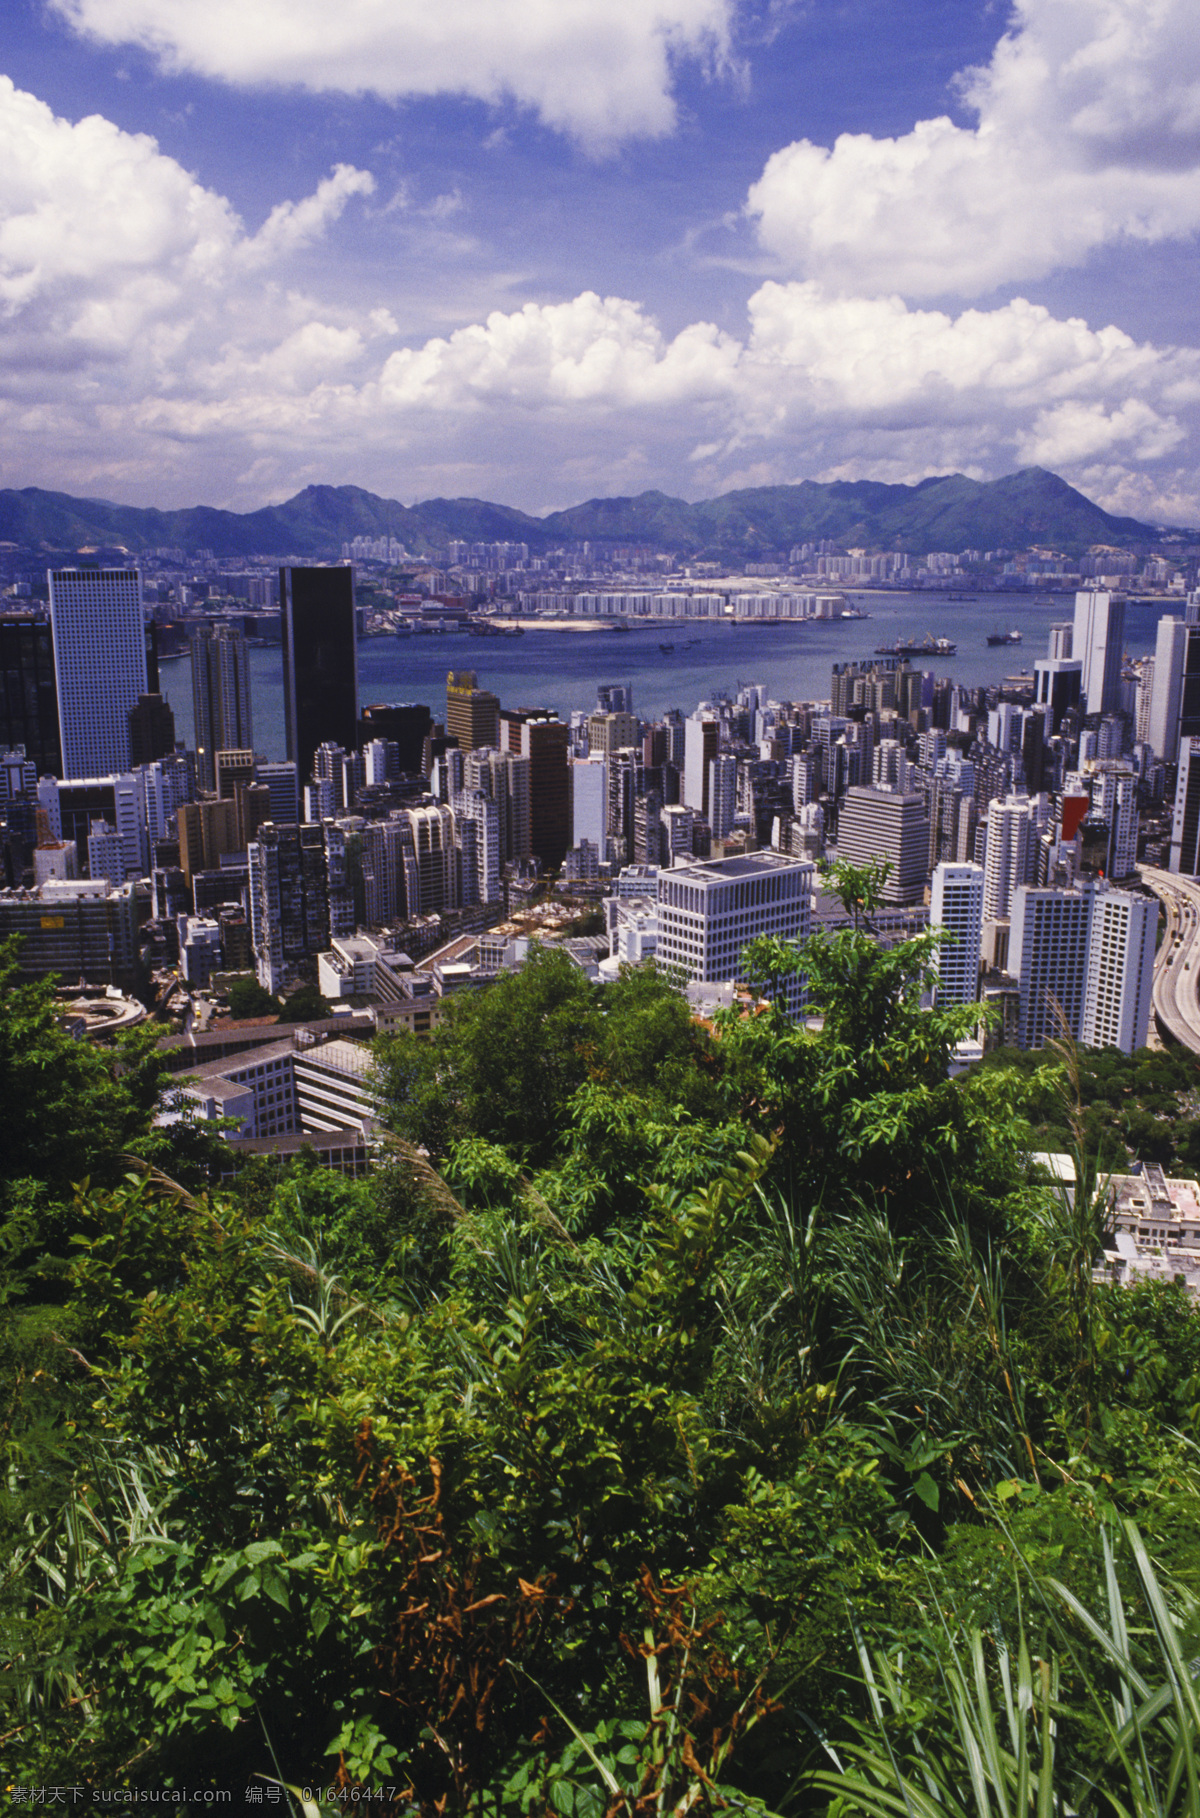 蓝天 白云 下 香港 城市 风光 城市风光 高楼大厦 建筑 风景 繁华 繁荣 蓝天白云 城市环境 摄影图 高清图片 环境家居